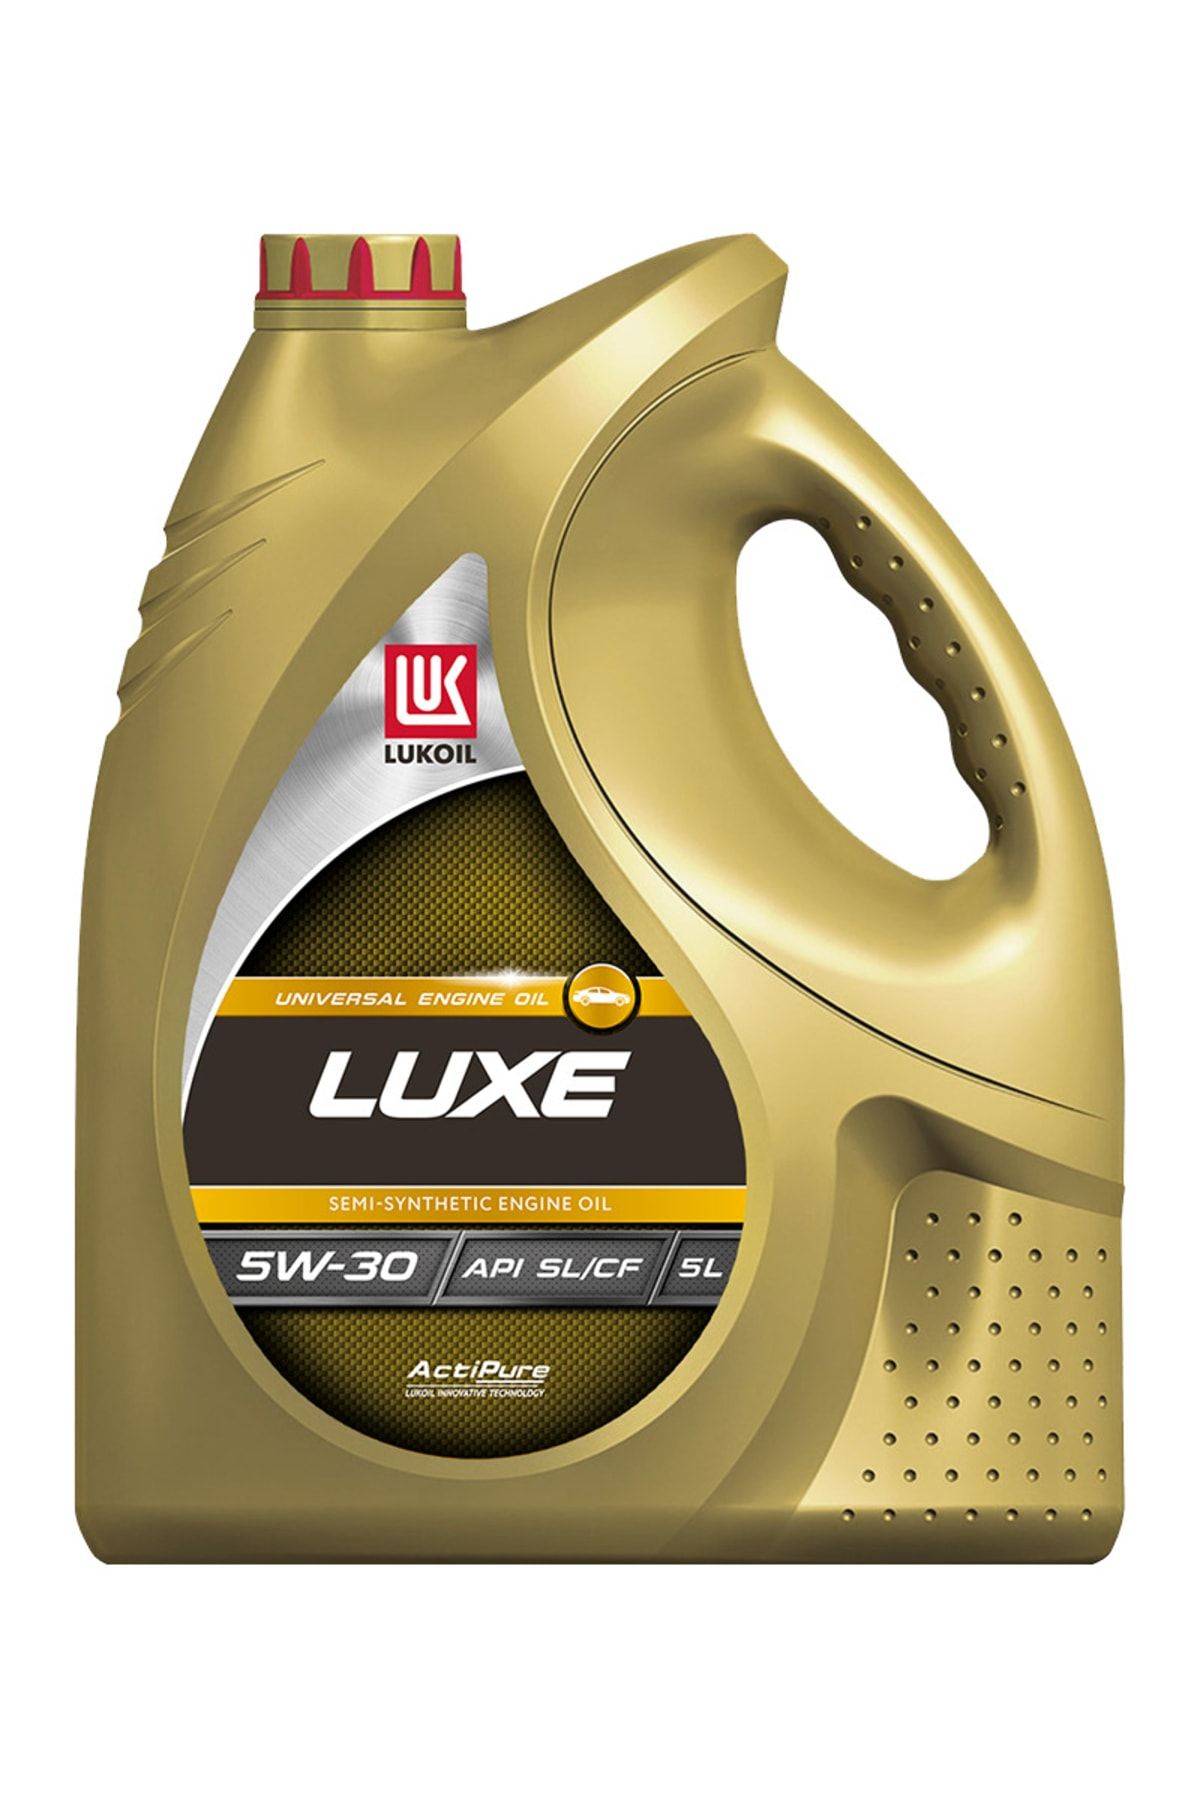 Масло 10w 40 цена 4 литра лукойл. Lukoil Luxe 10w-40. Масло Лукойл 10w 40 полусинтетика. Лукойл Люкс SAE 10w-40, API SL/CF 5 Л. Лукойл Luxe 10w 40 полусинтетика.